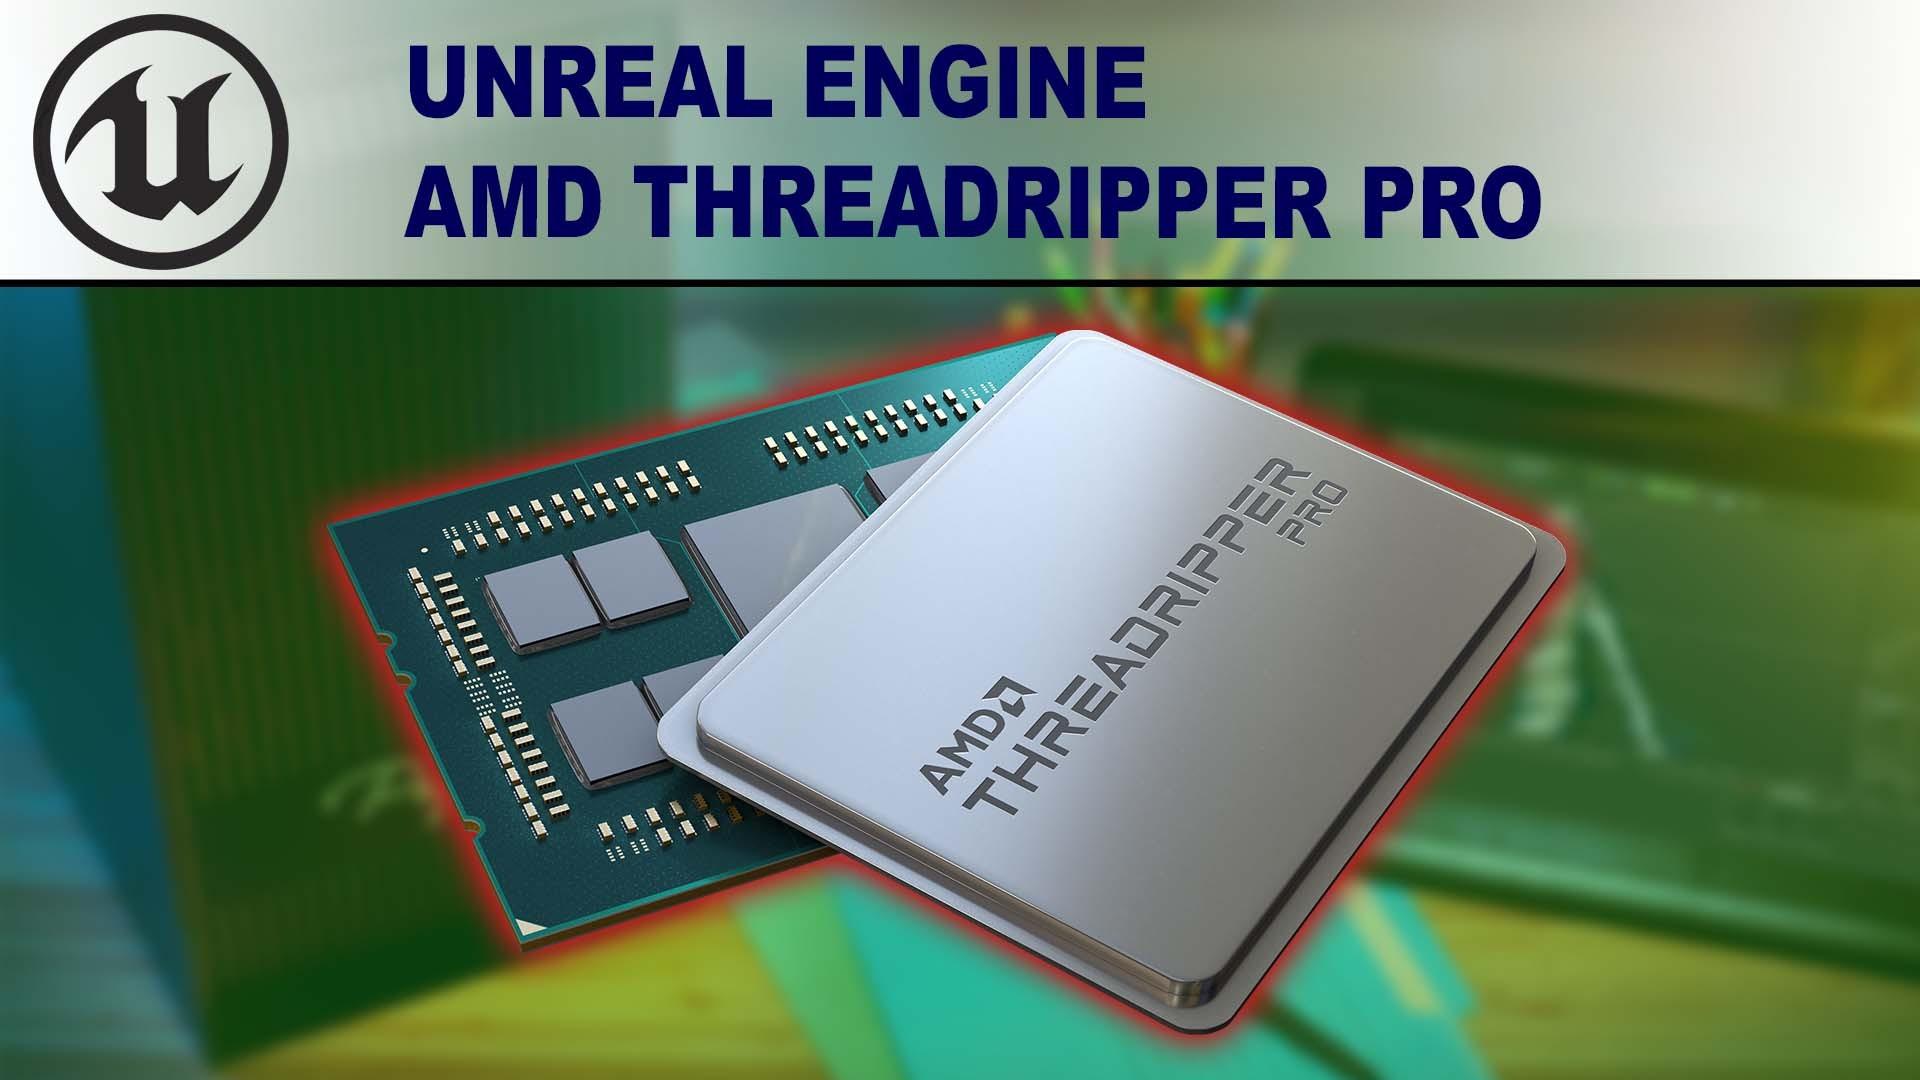 AMD Ryzen Threadripper PRO 3000 Series for Unreal Engine